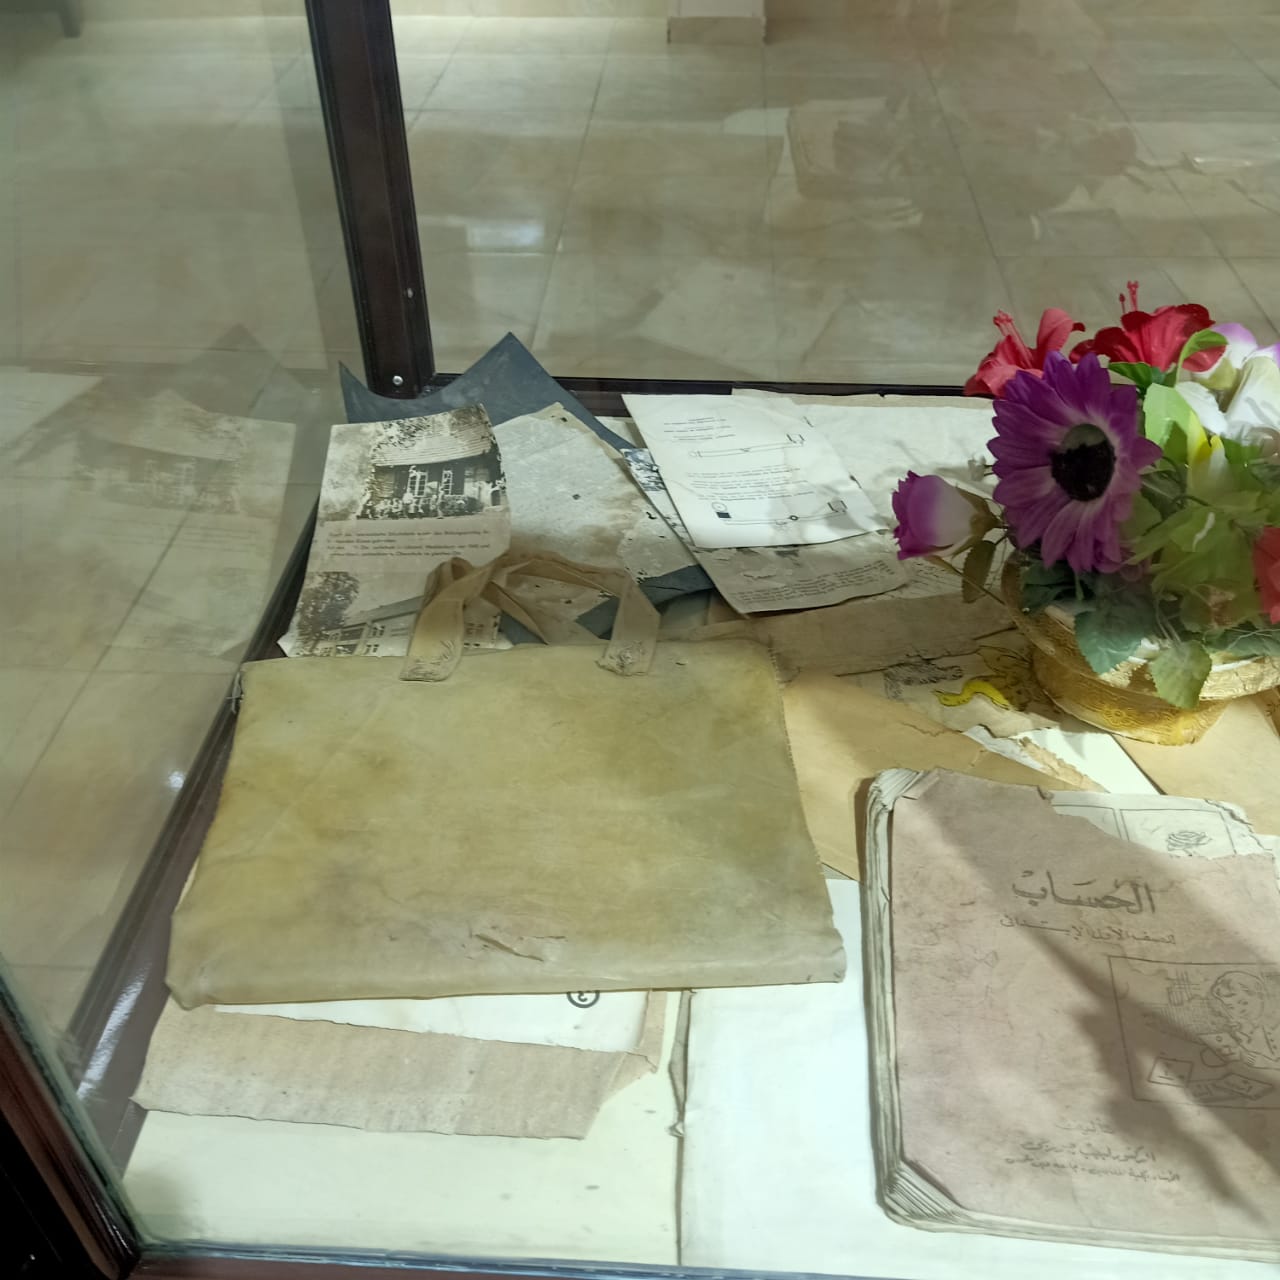  كتب وكراسات وملابس شهداء مذبحة بحر البقر بمتحف المدرسة (2)